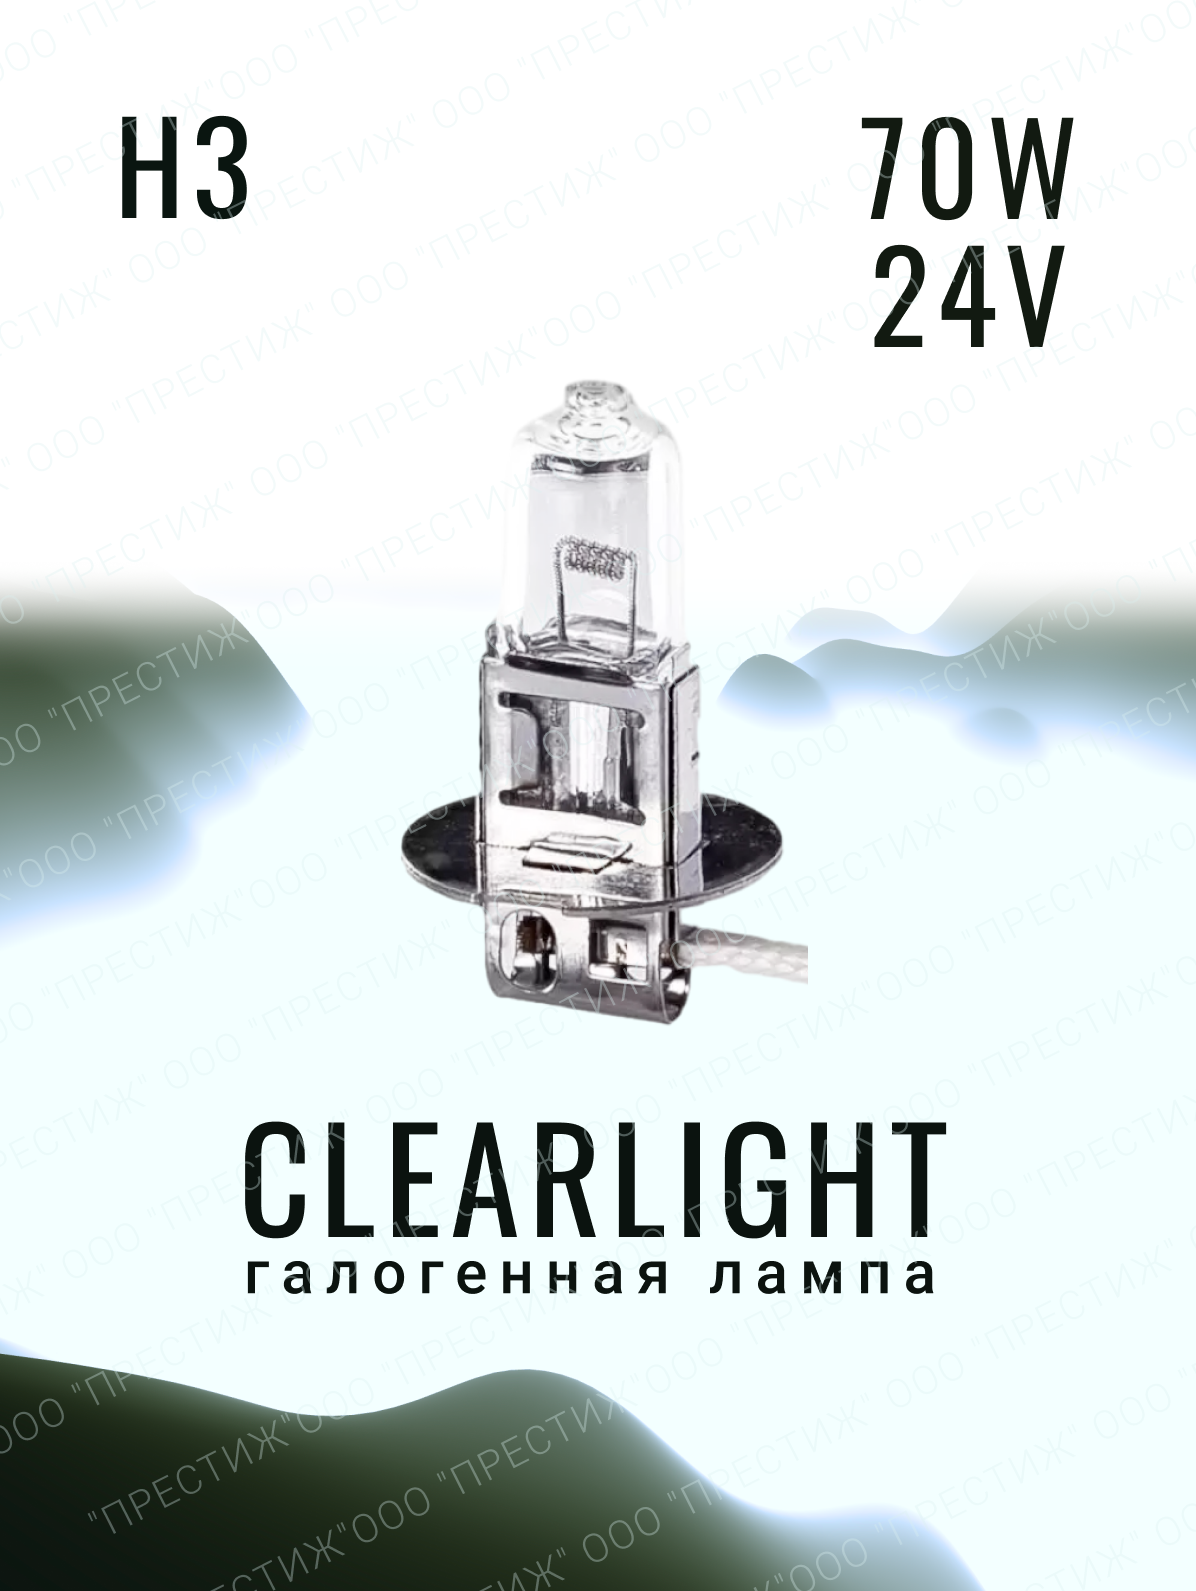 Галогенная лампа Clearlight H3 LongLife 24V 1шт